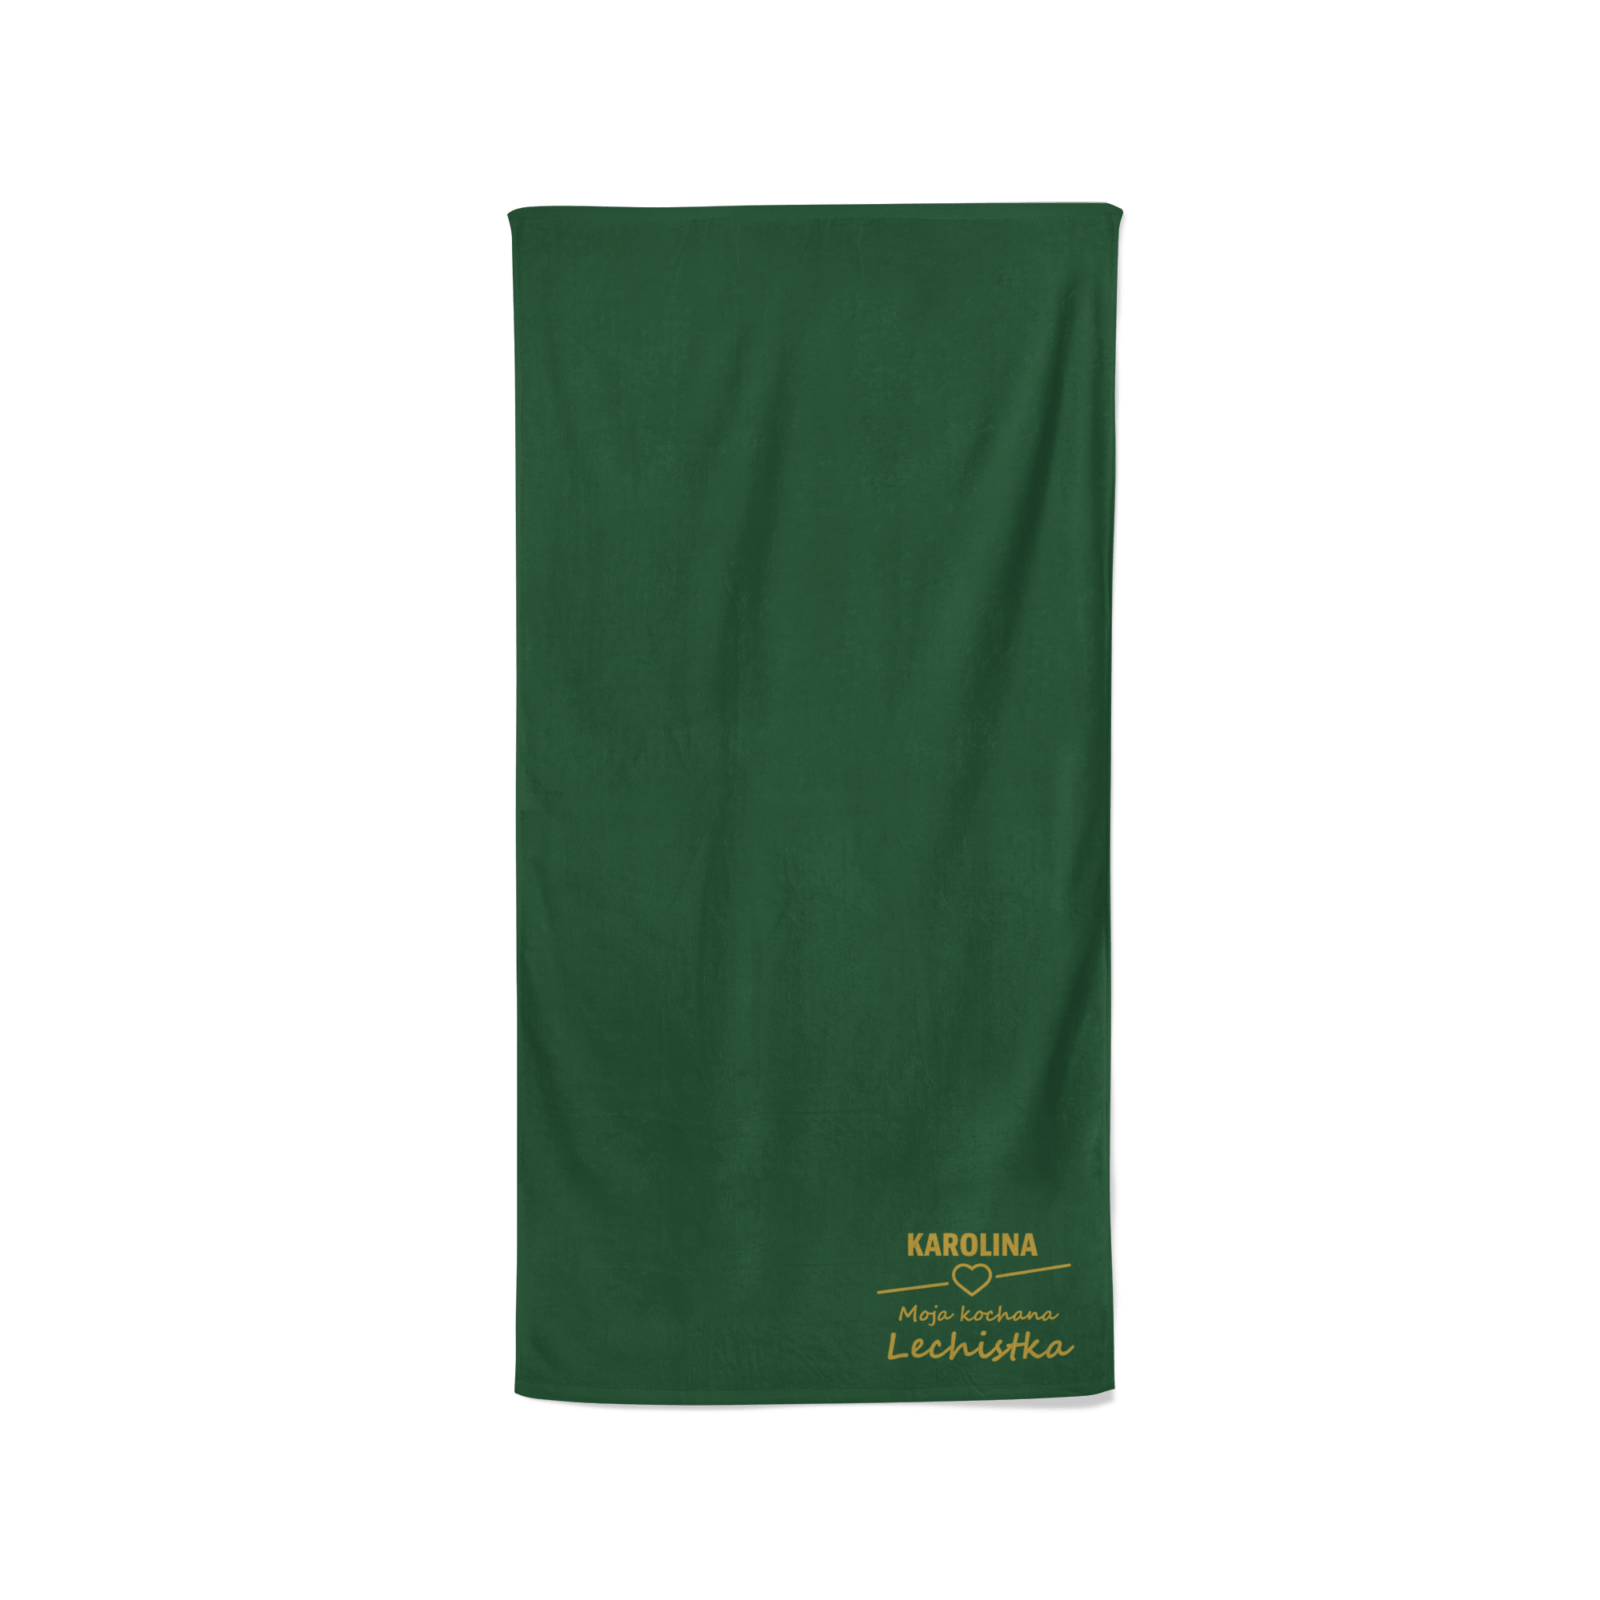 Ręcznik “Lechistka” z Twoim imieniem 50×100 ciemna zieleń złoty haft